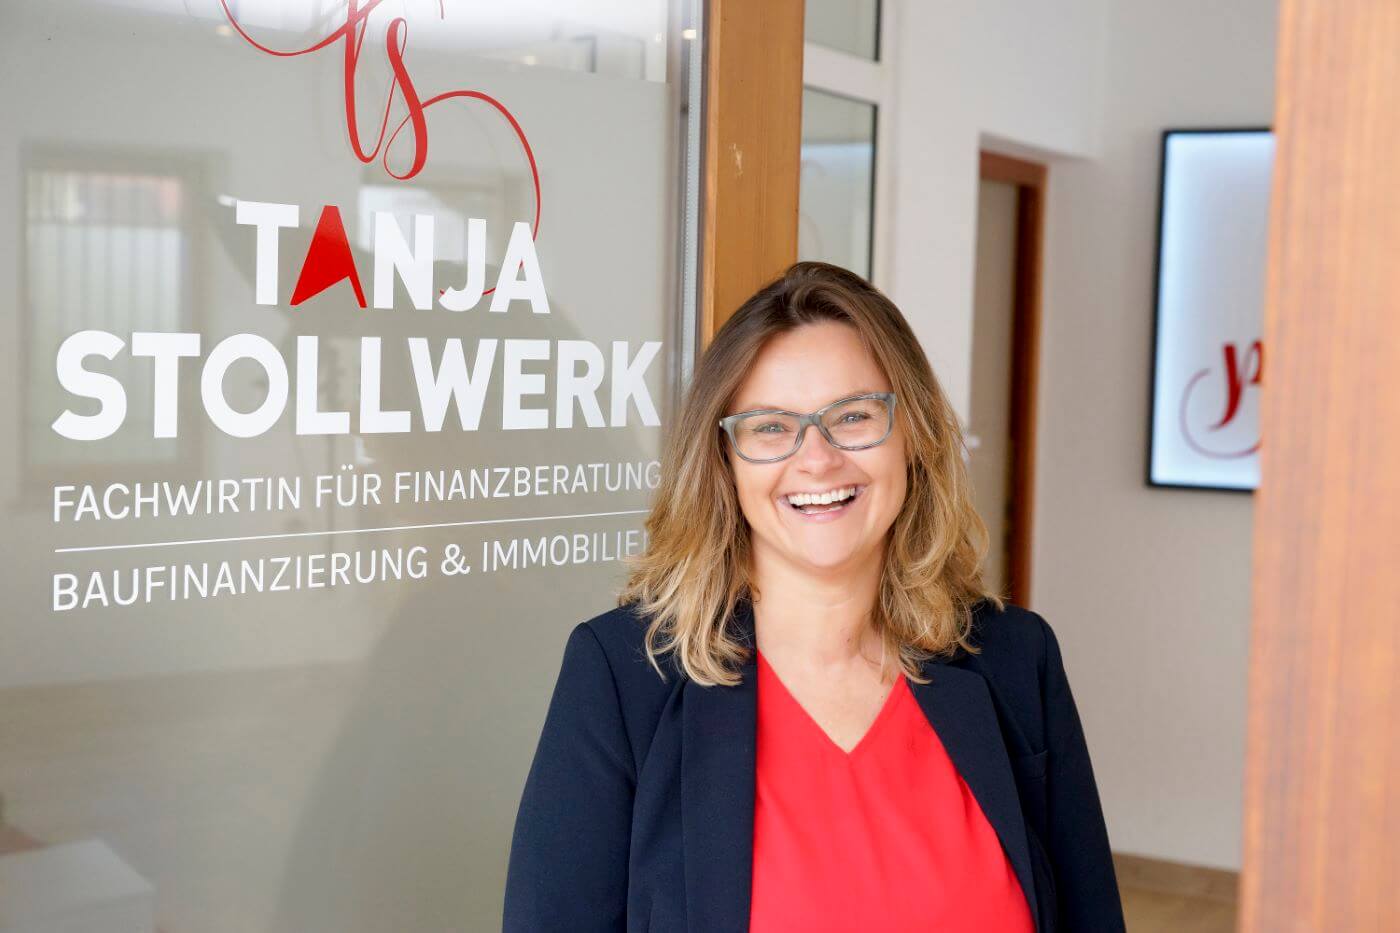 Tanja Stollwerk, Fachwirtin für Finanzberatung.